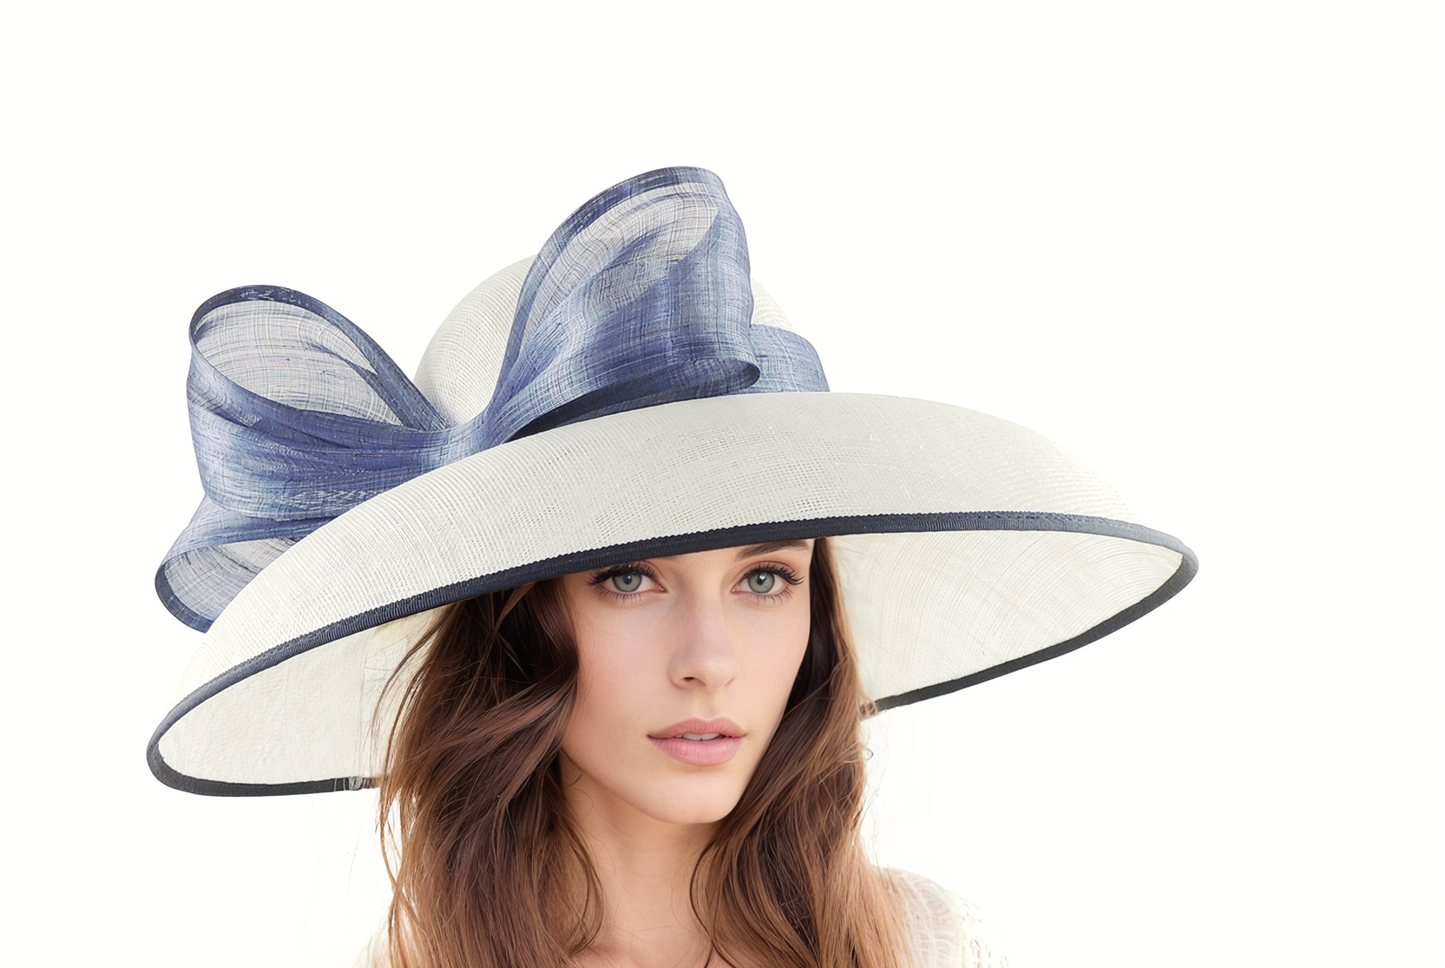 Saskia Classic Audrey Hepburn Style Royal Ascot Kentucky Derby Hat